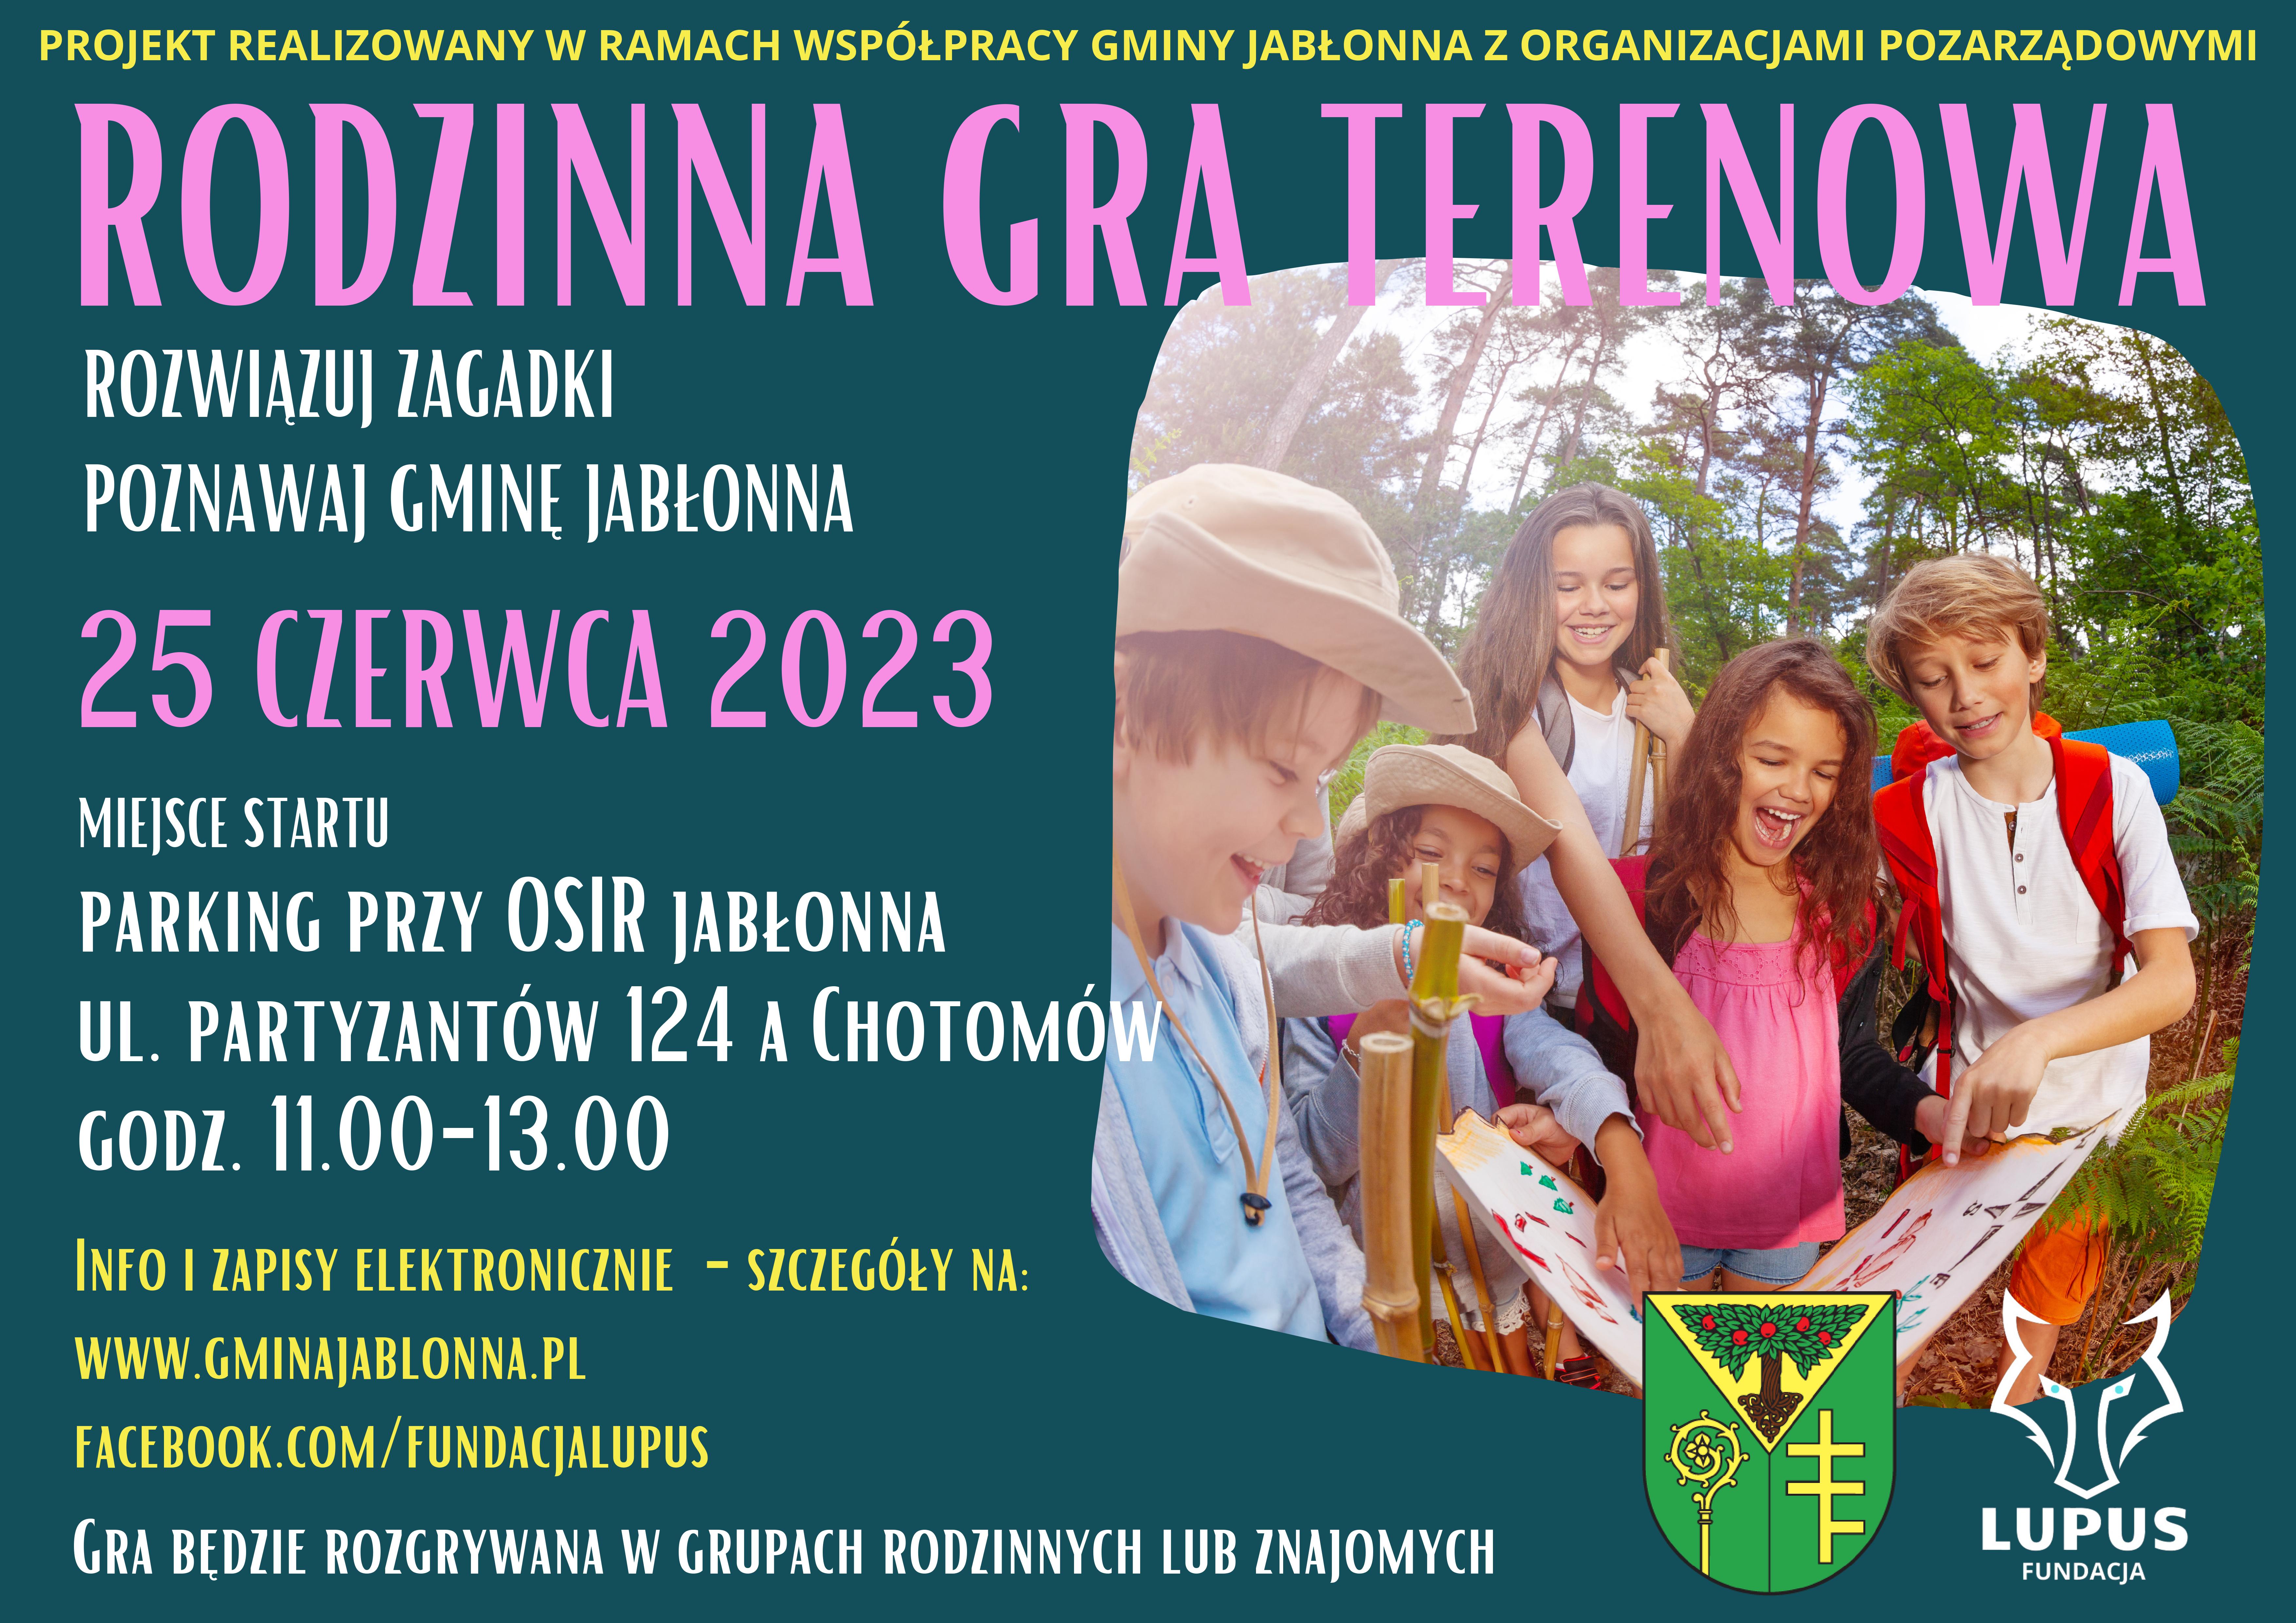 Plakat informujący o Rodzinnej grze terenowej w dniu 25 czerwca 2023 roku w godz. 11.00-13.00 w Lesie Chotomowskich